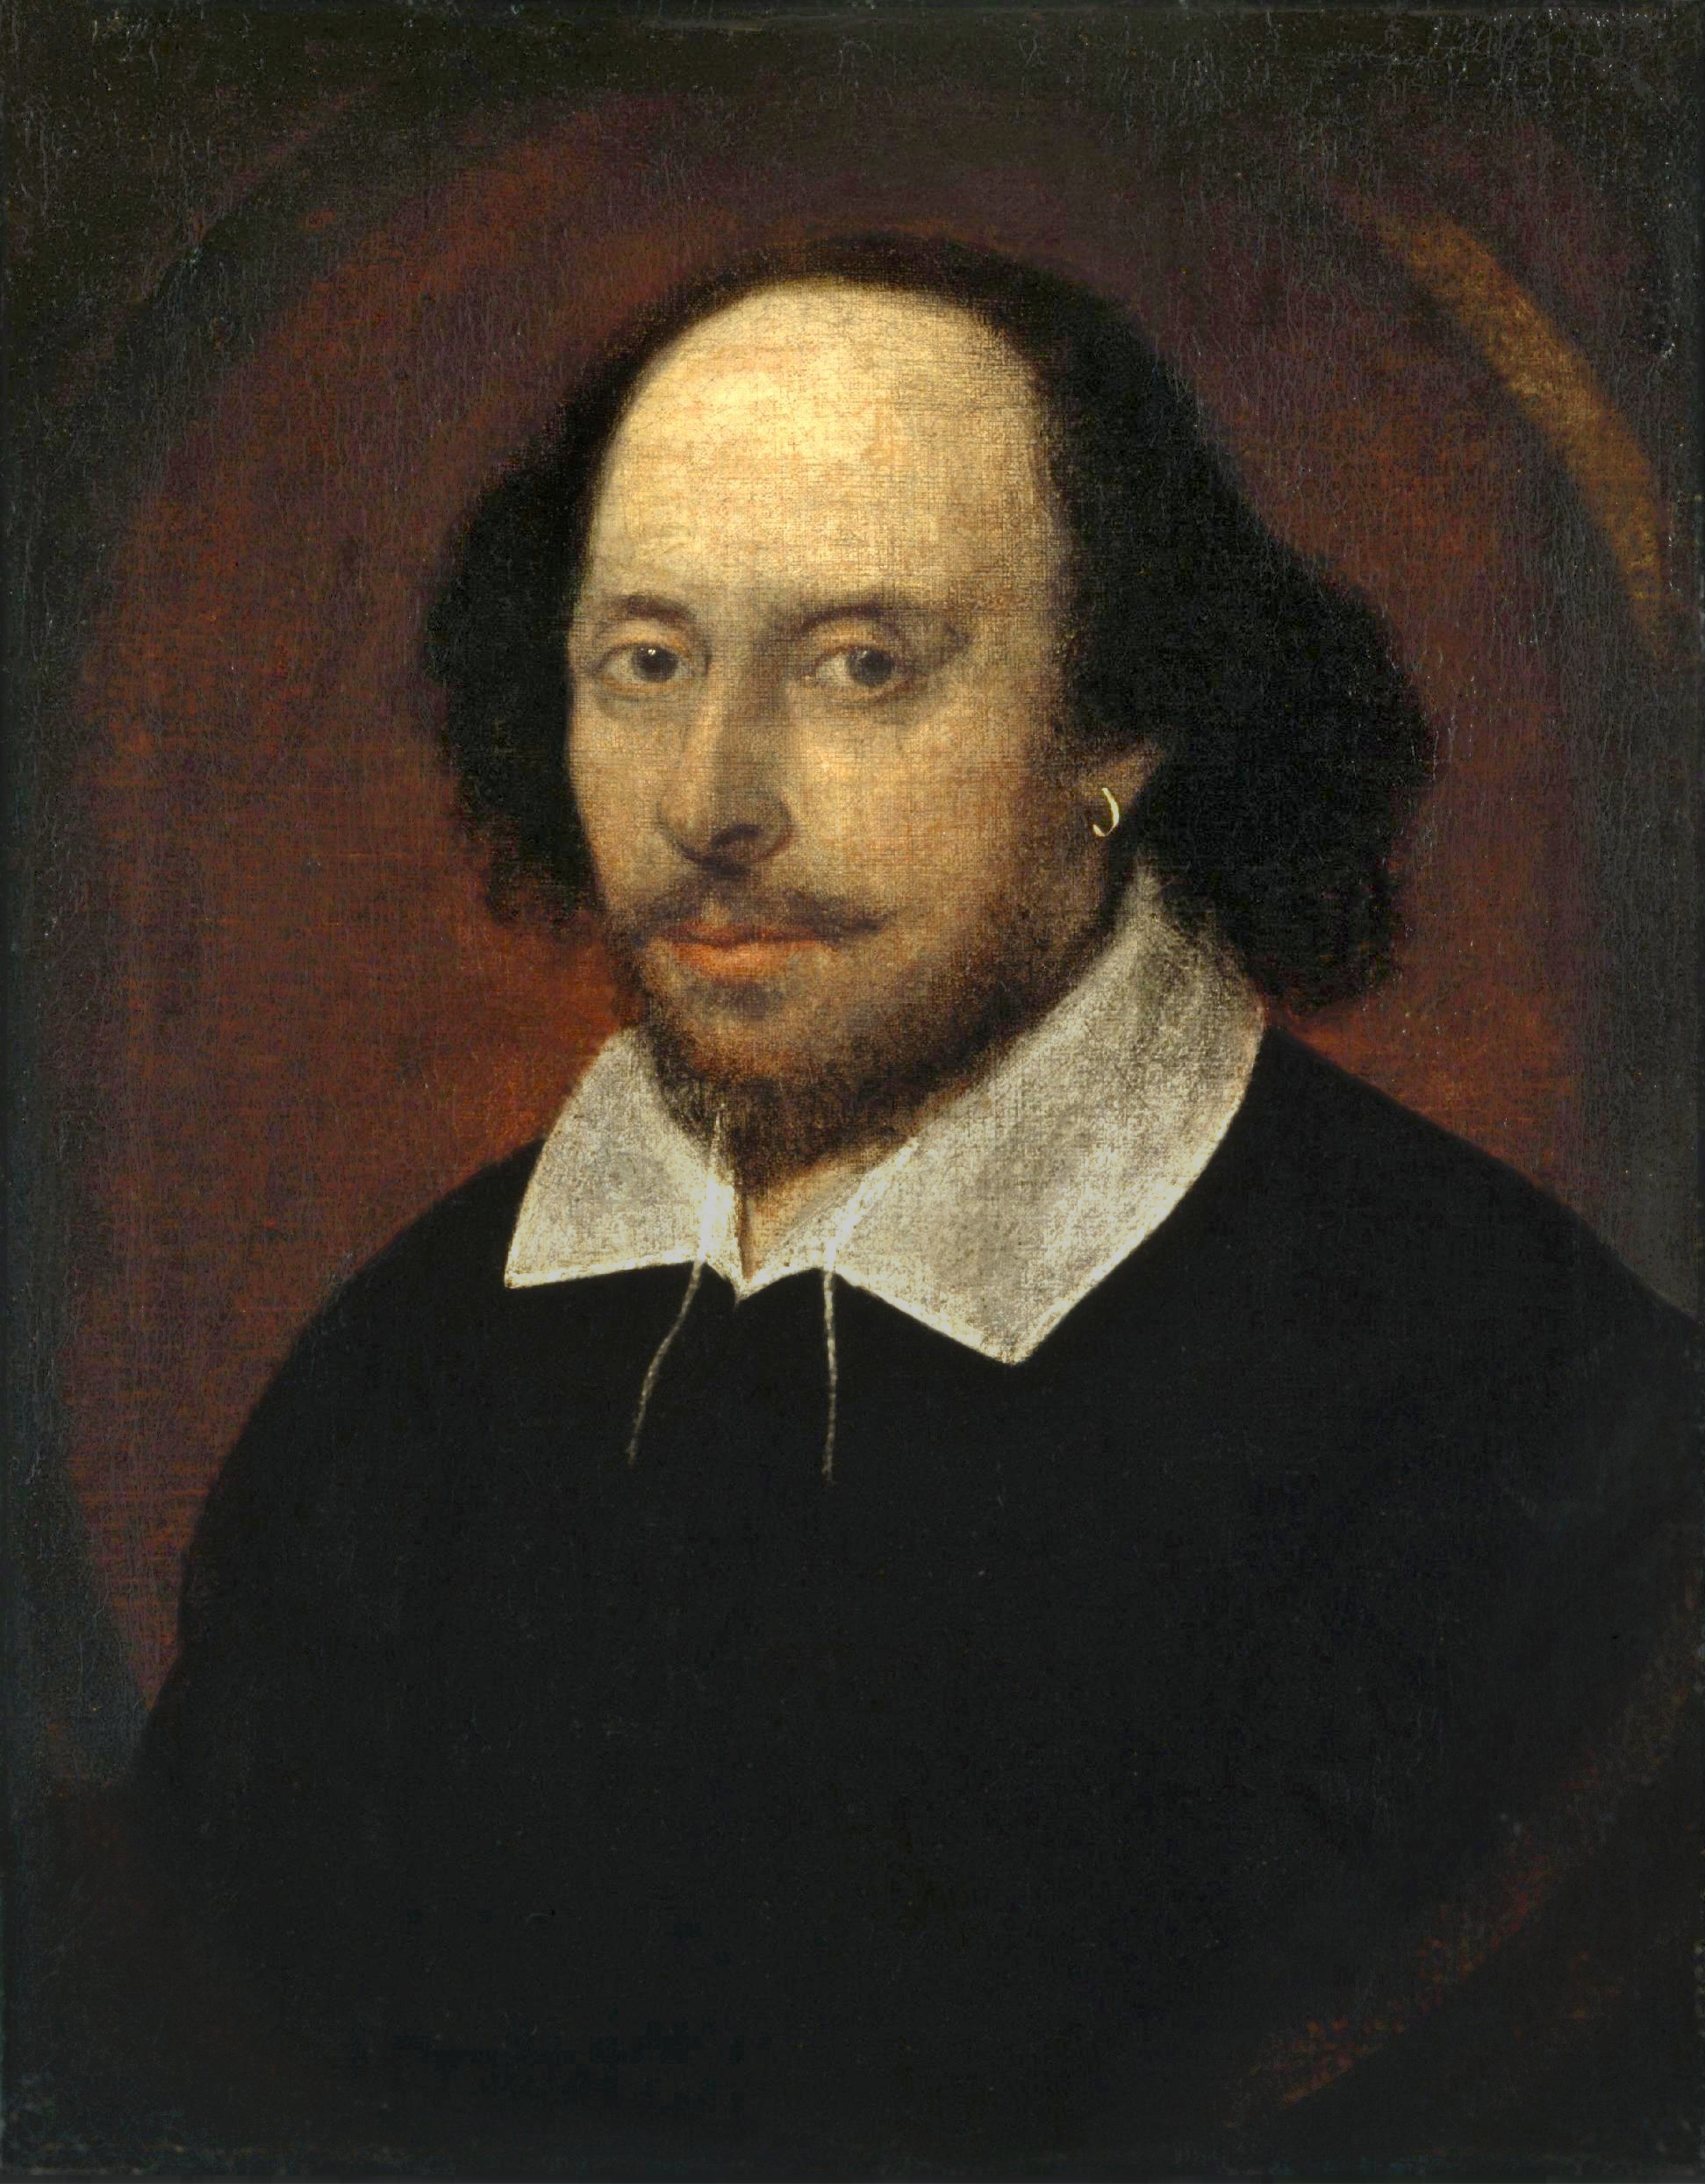 auteur William Shakespeare de la citation L'amour ne ressemble pas aux yeux, mais avec l'esprit, et est donc ailé à Cupidon peint à l'aveugle.